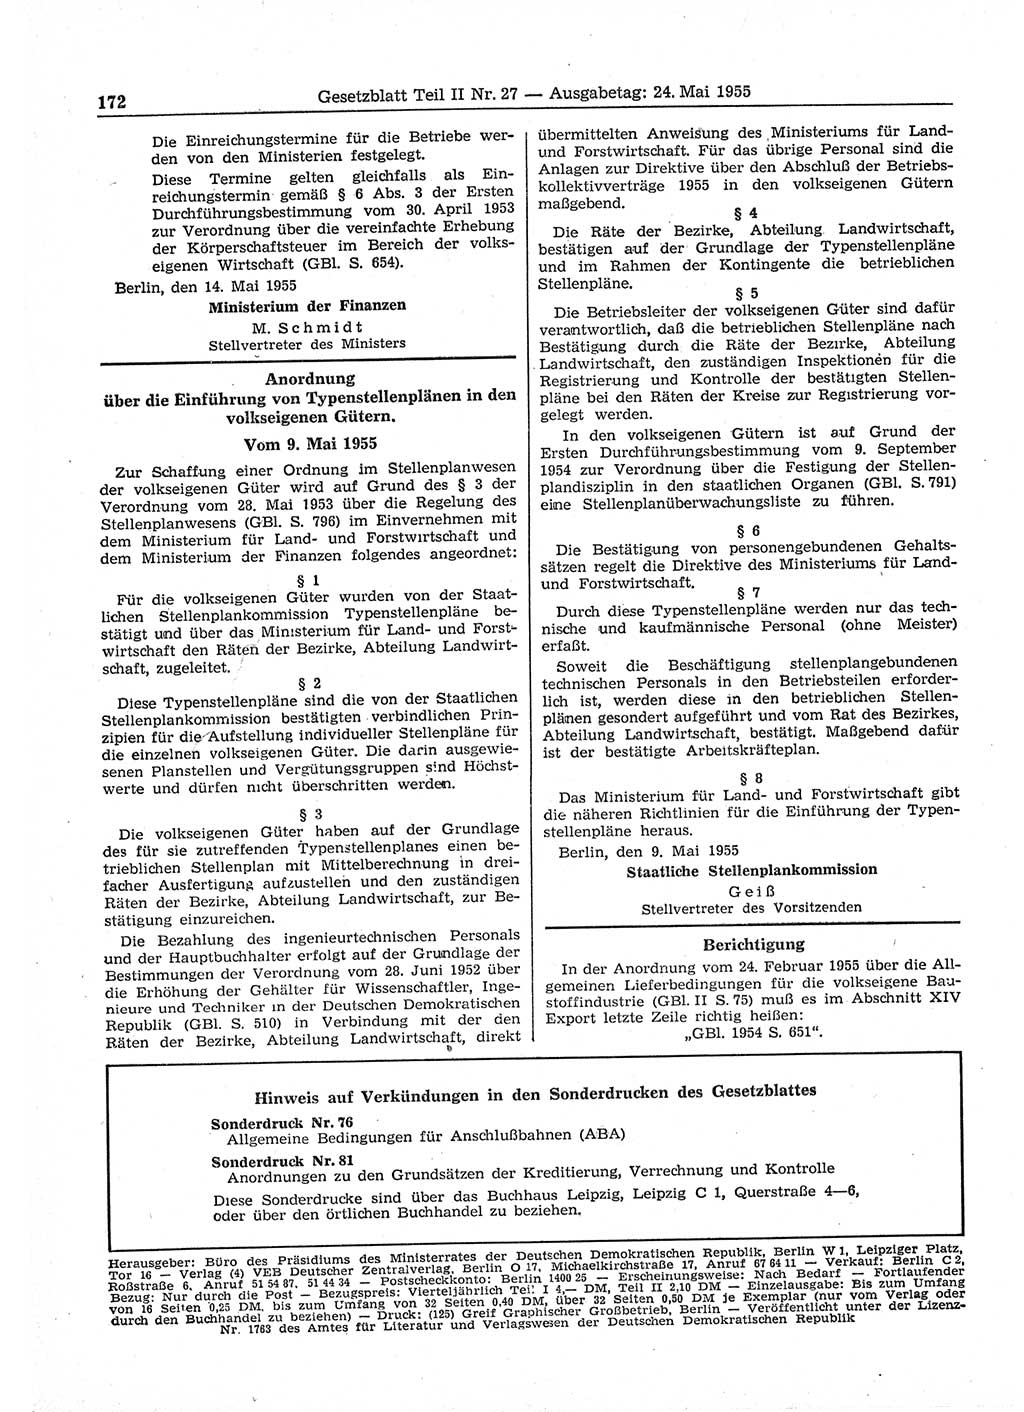 Gesetzblatt (GBl.) der Deutschen Demokratischen Republik (DDR) Teil ⅠⅠ 1955, Seite 172 (GBl. DDR ⅠⅠ 1955, S. 172)